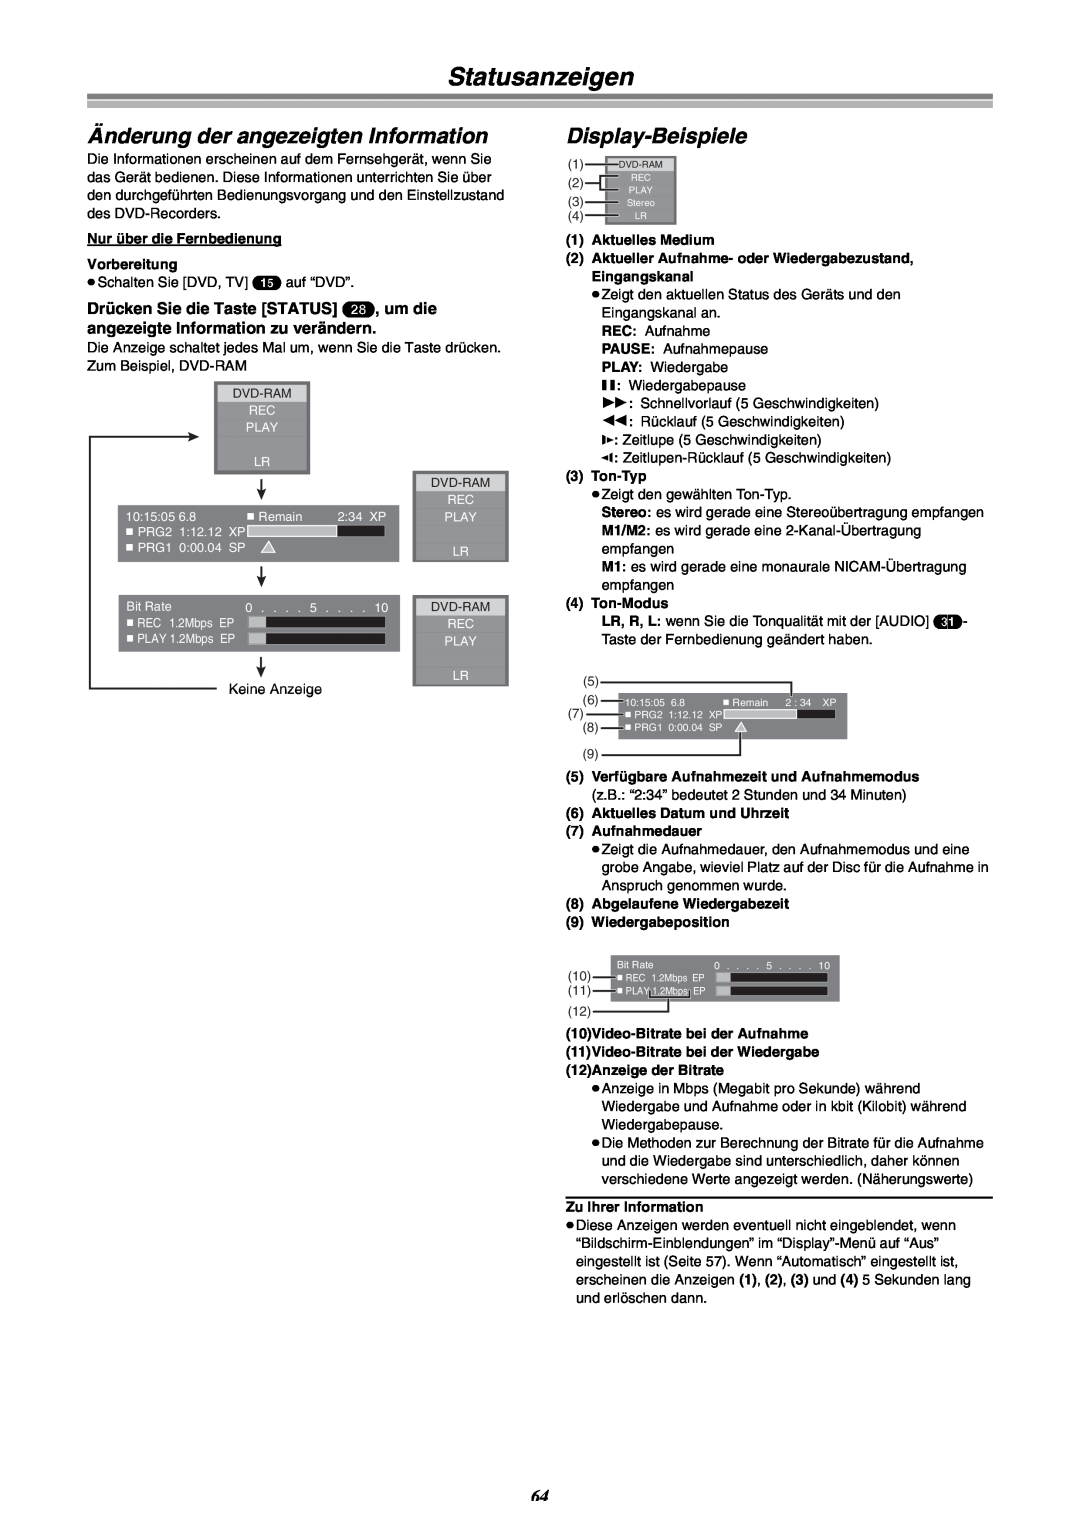 Panasonic DMR-E30 manual Statusanzeigen, Änderung der angezeigten Information, Display-Beispiele 